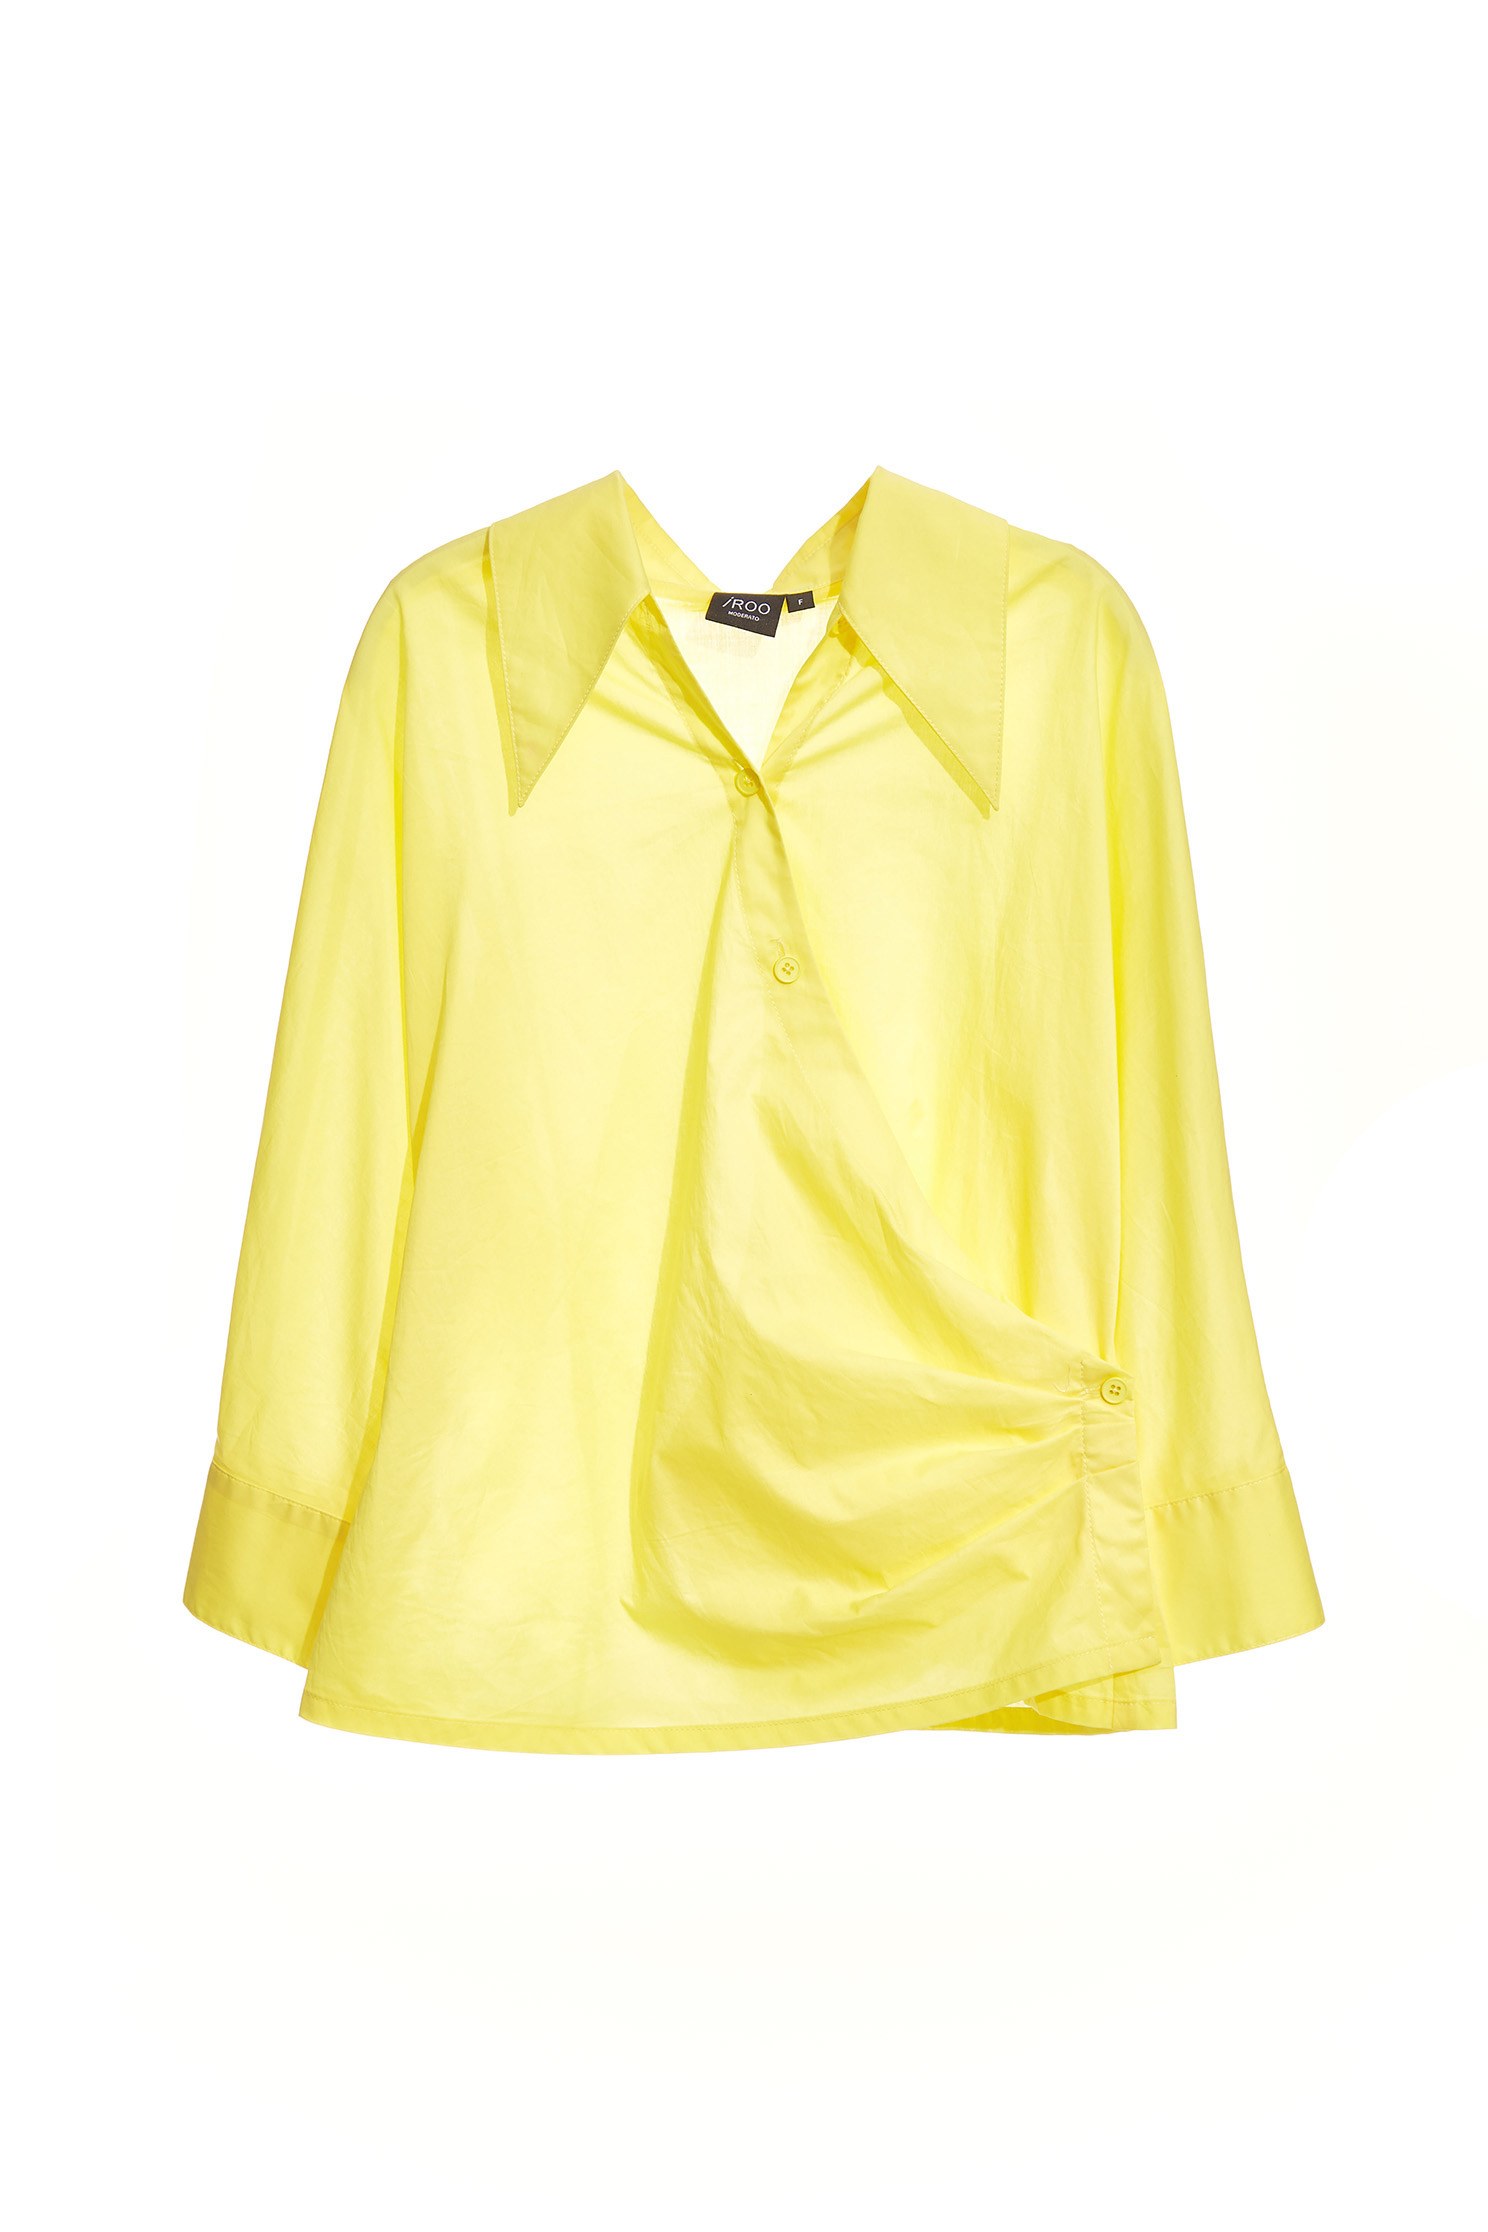 檸檬色襯衫式上衣檸檬色襯衫式上衣,上班穿搭,上衣,春夏穿搭,襯衫